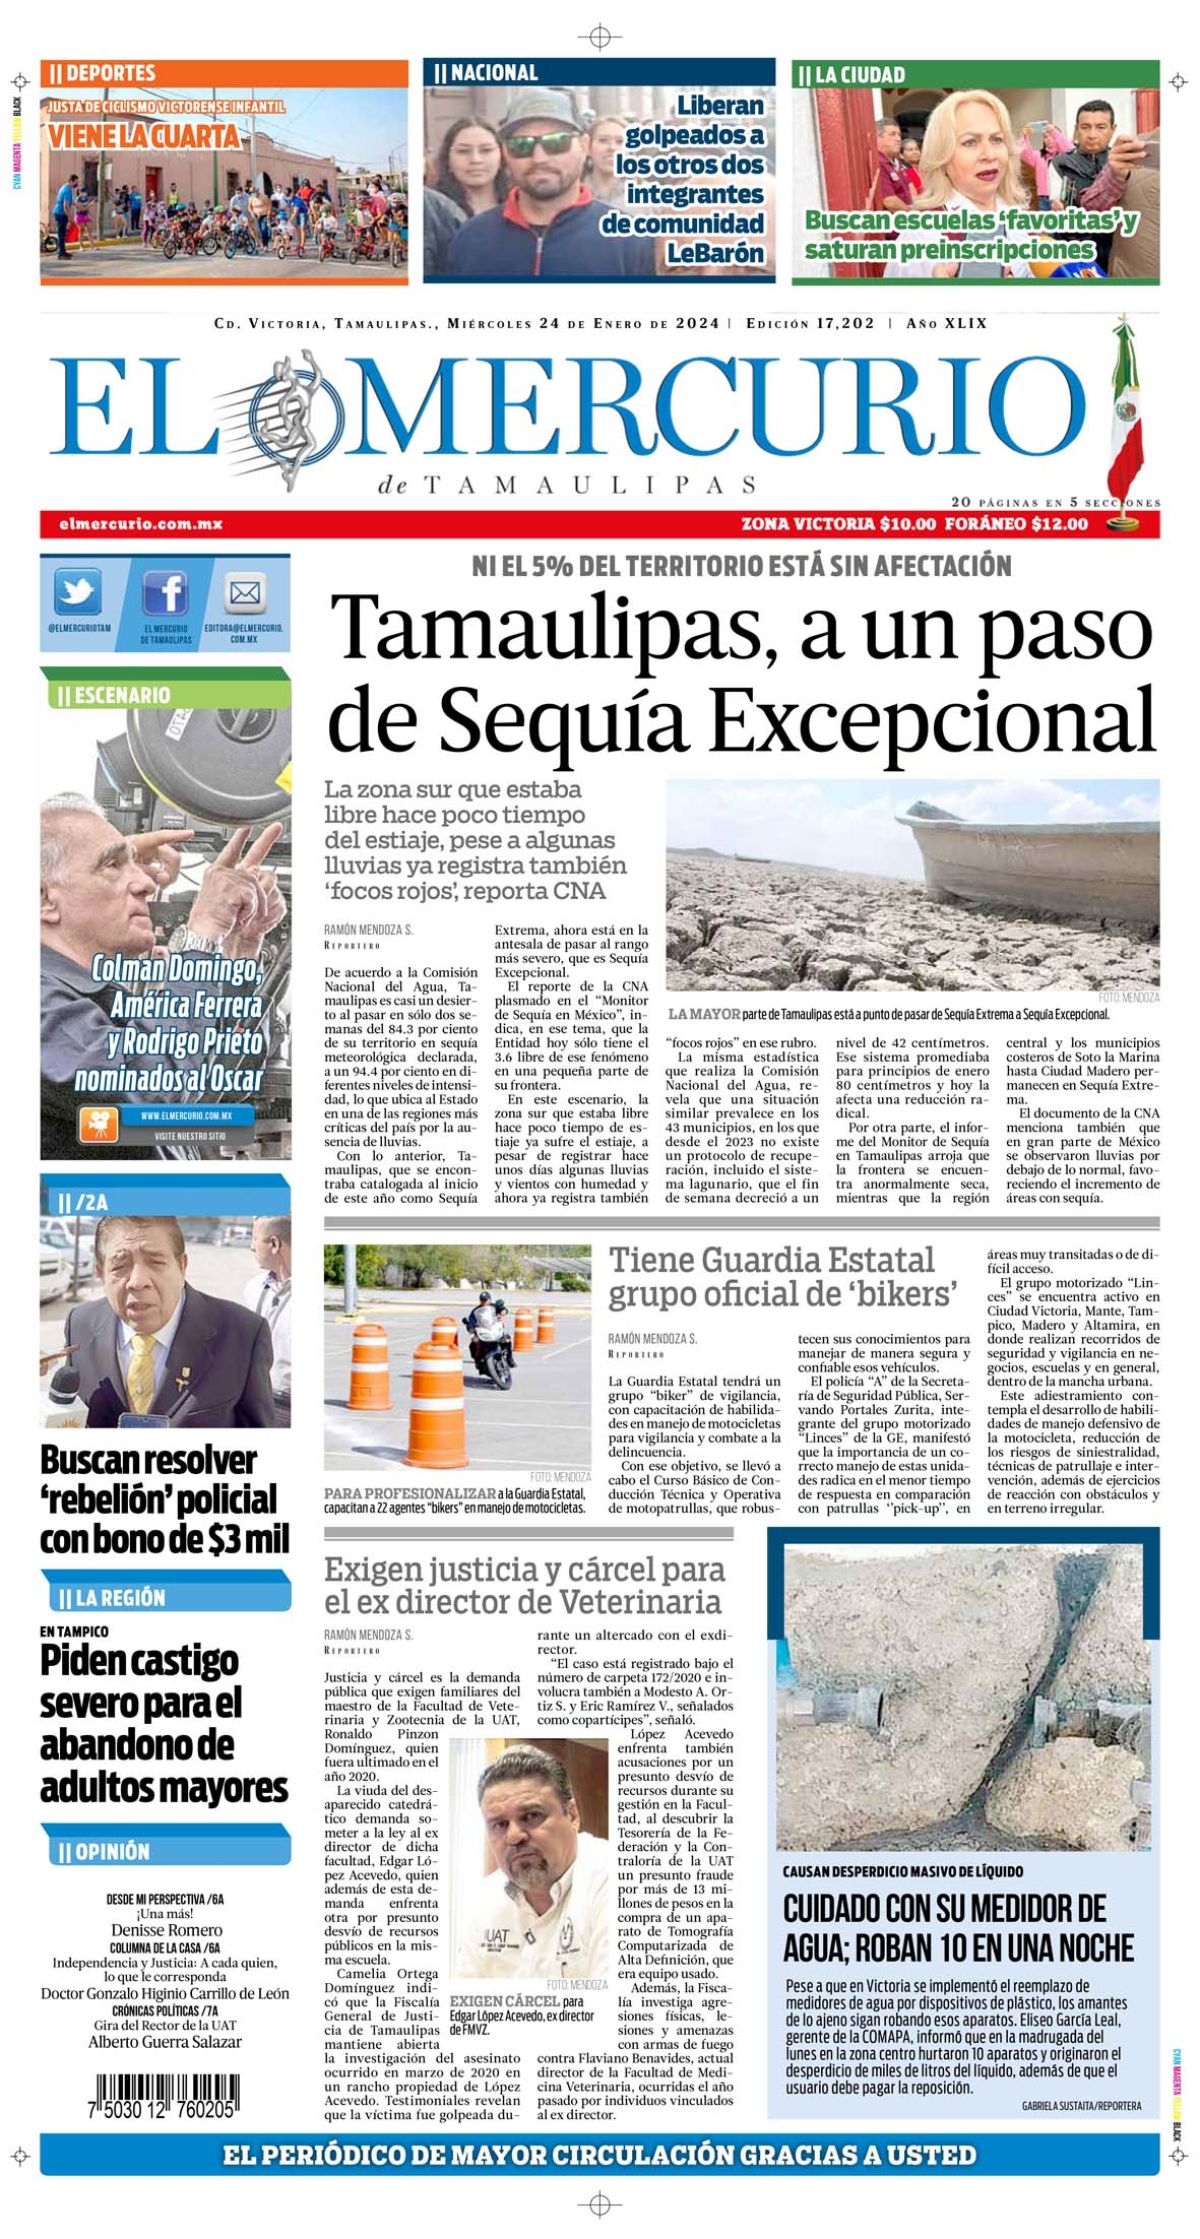 Tamaulipas, a un paso de Sequía Excepcional